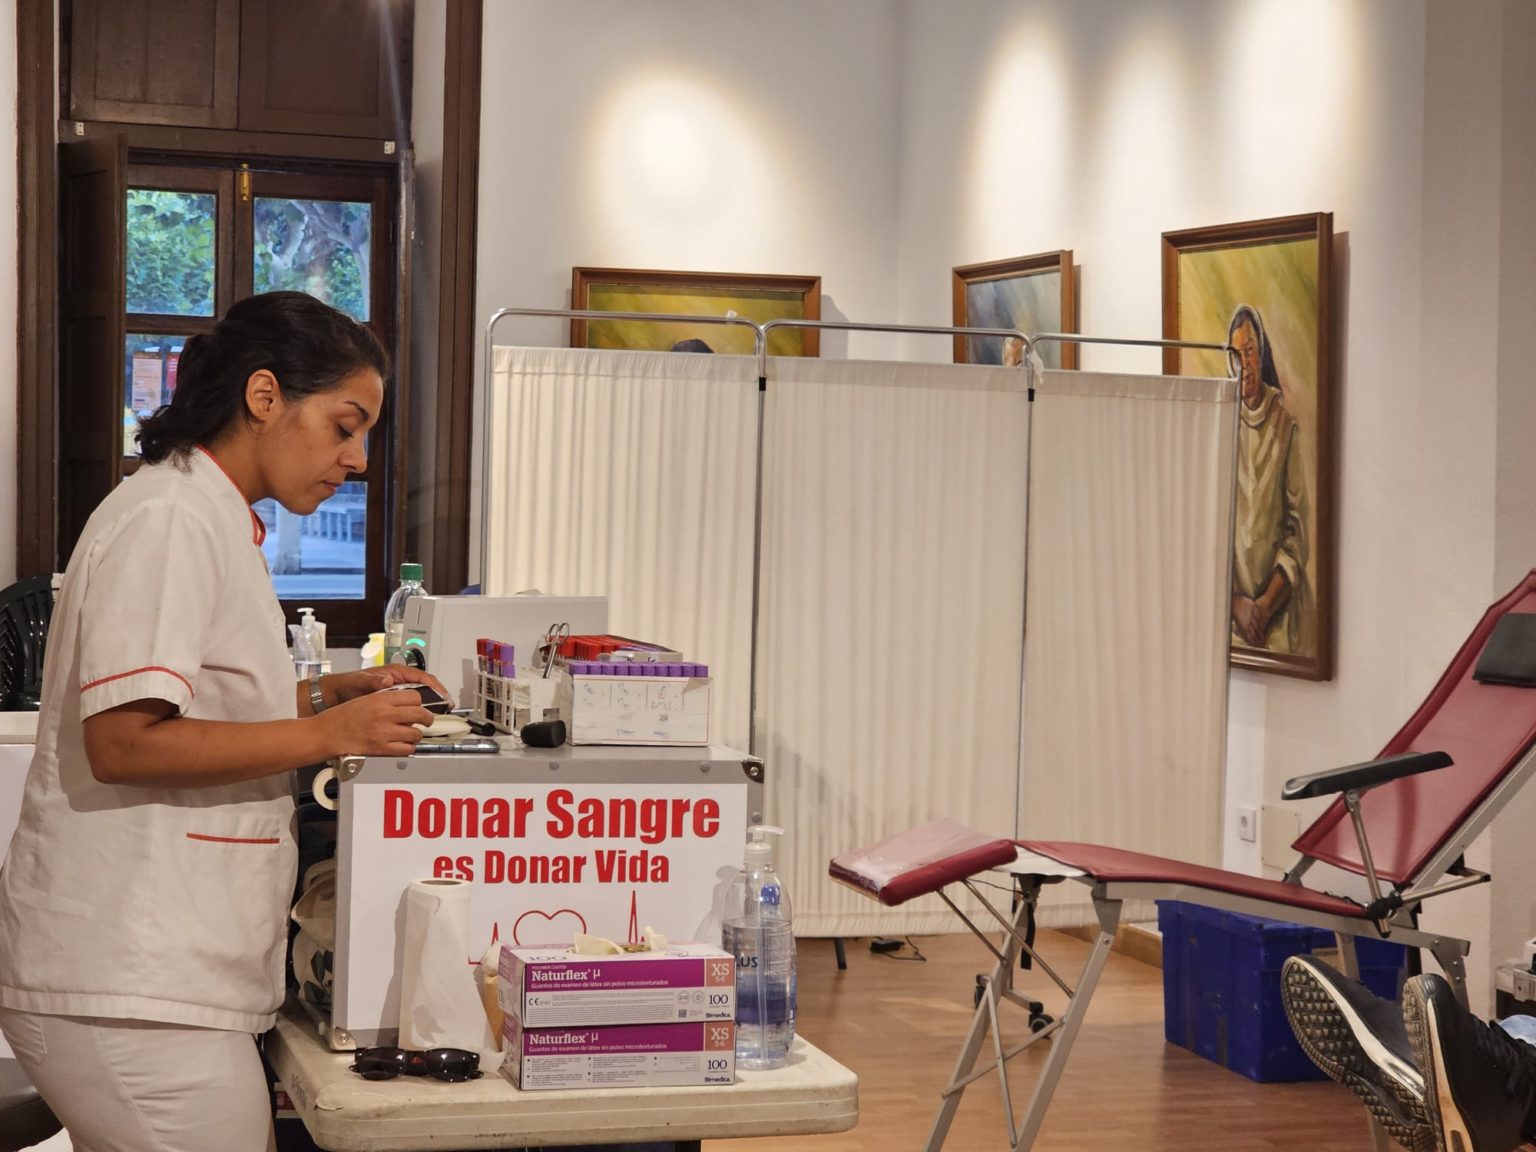 La unidad de donación de sangre estará en Teror la próxima semana, del 13 al 17 mayo